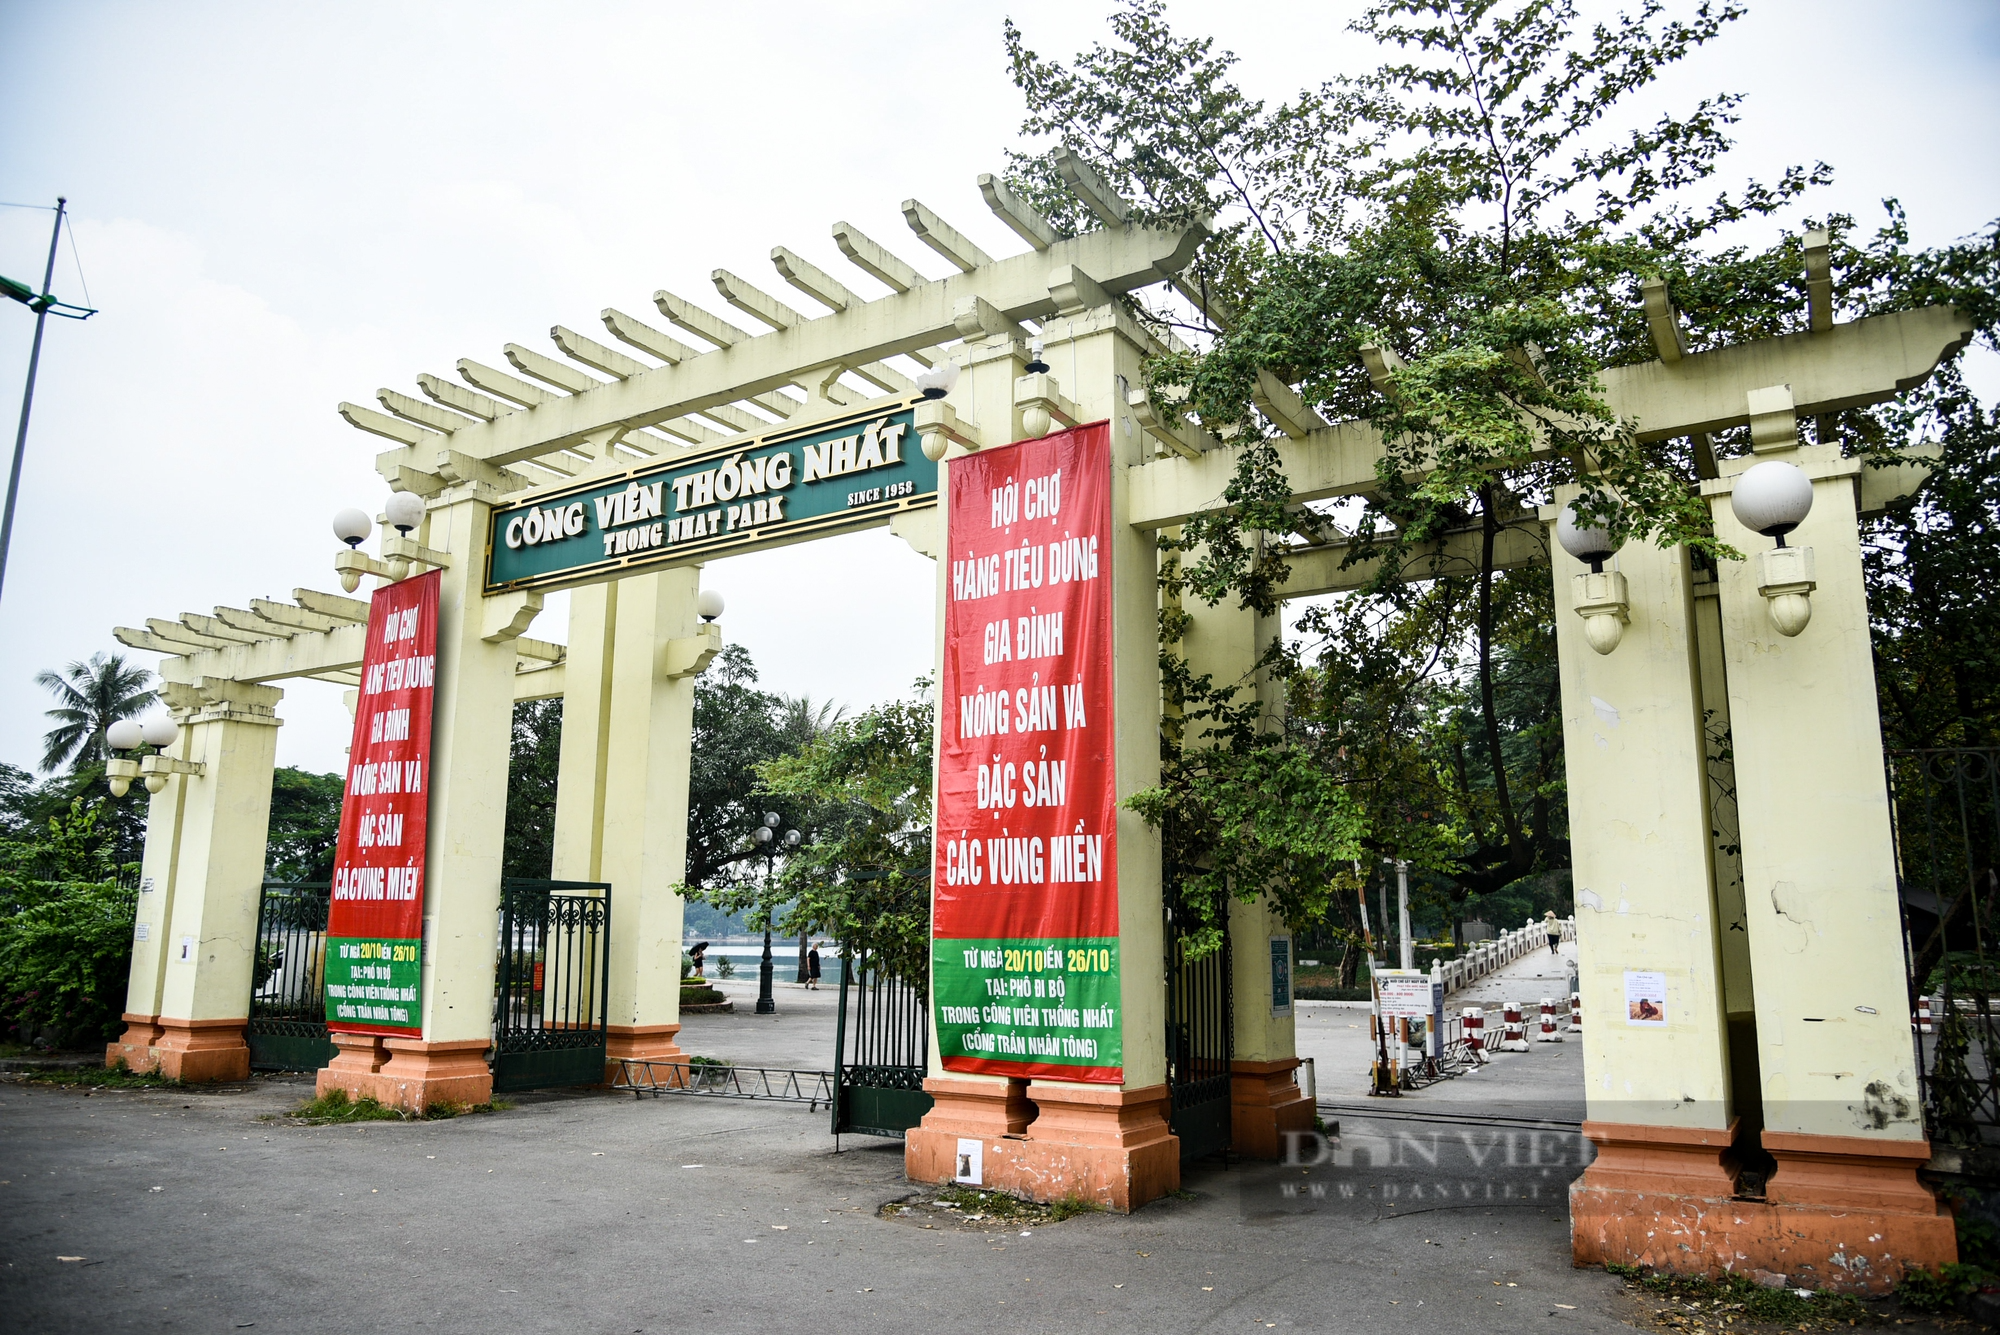 Cận cảnh ba công viên lớn ở Hà Nội được đầu tư 900 tỷ đồng để cải tạo - Ảnh 7.